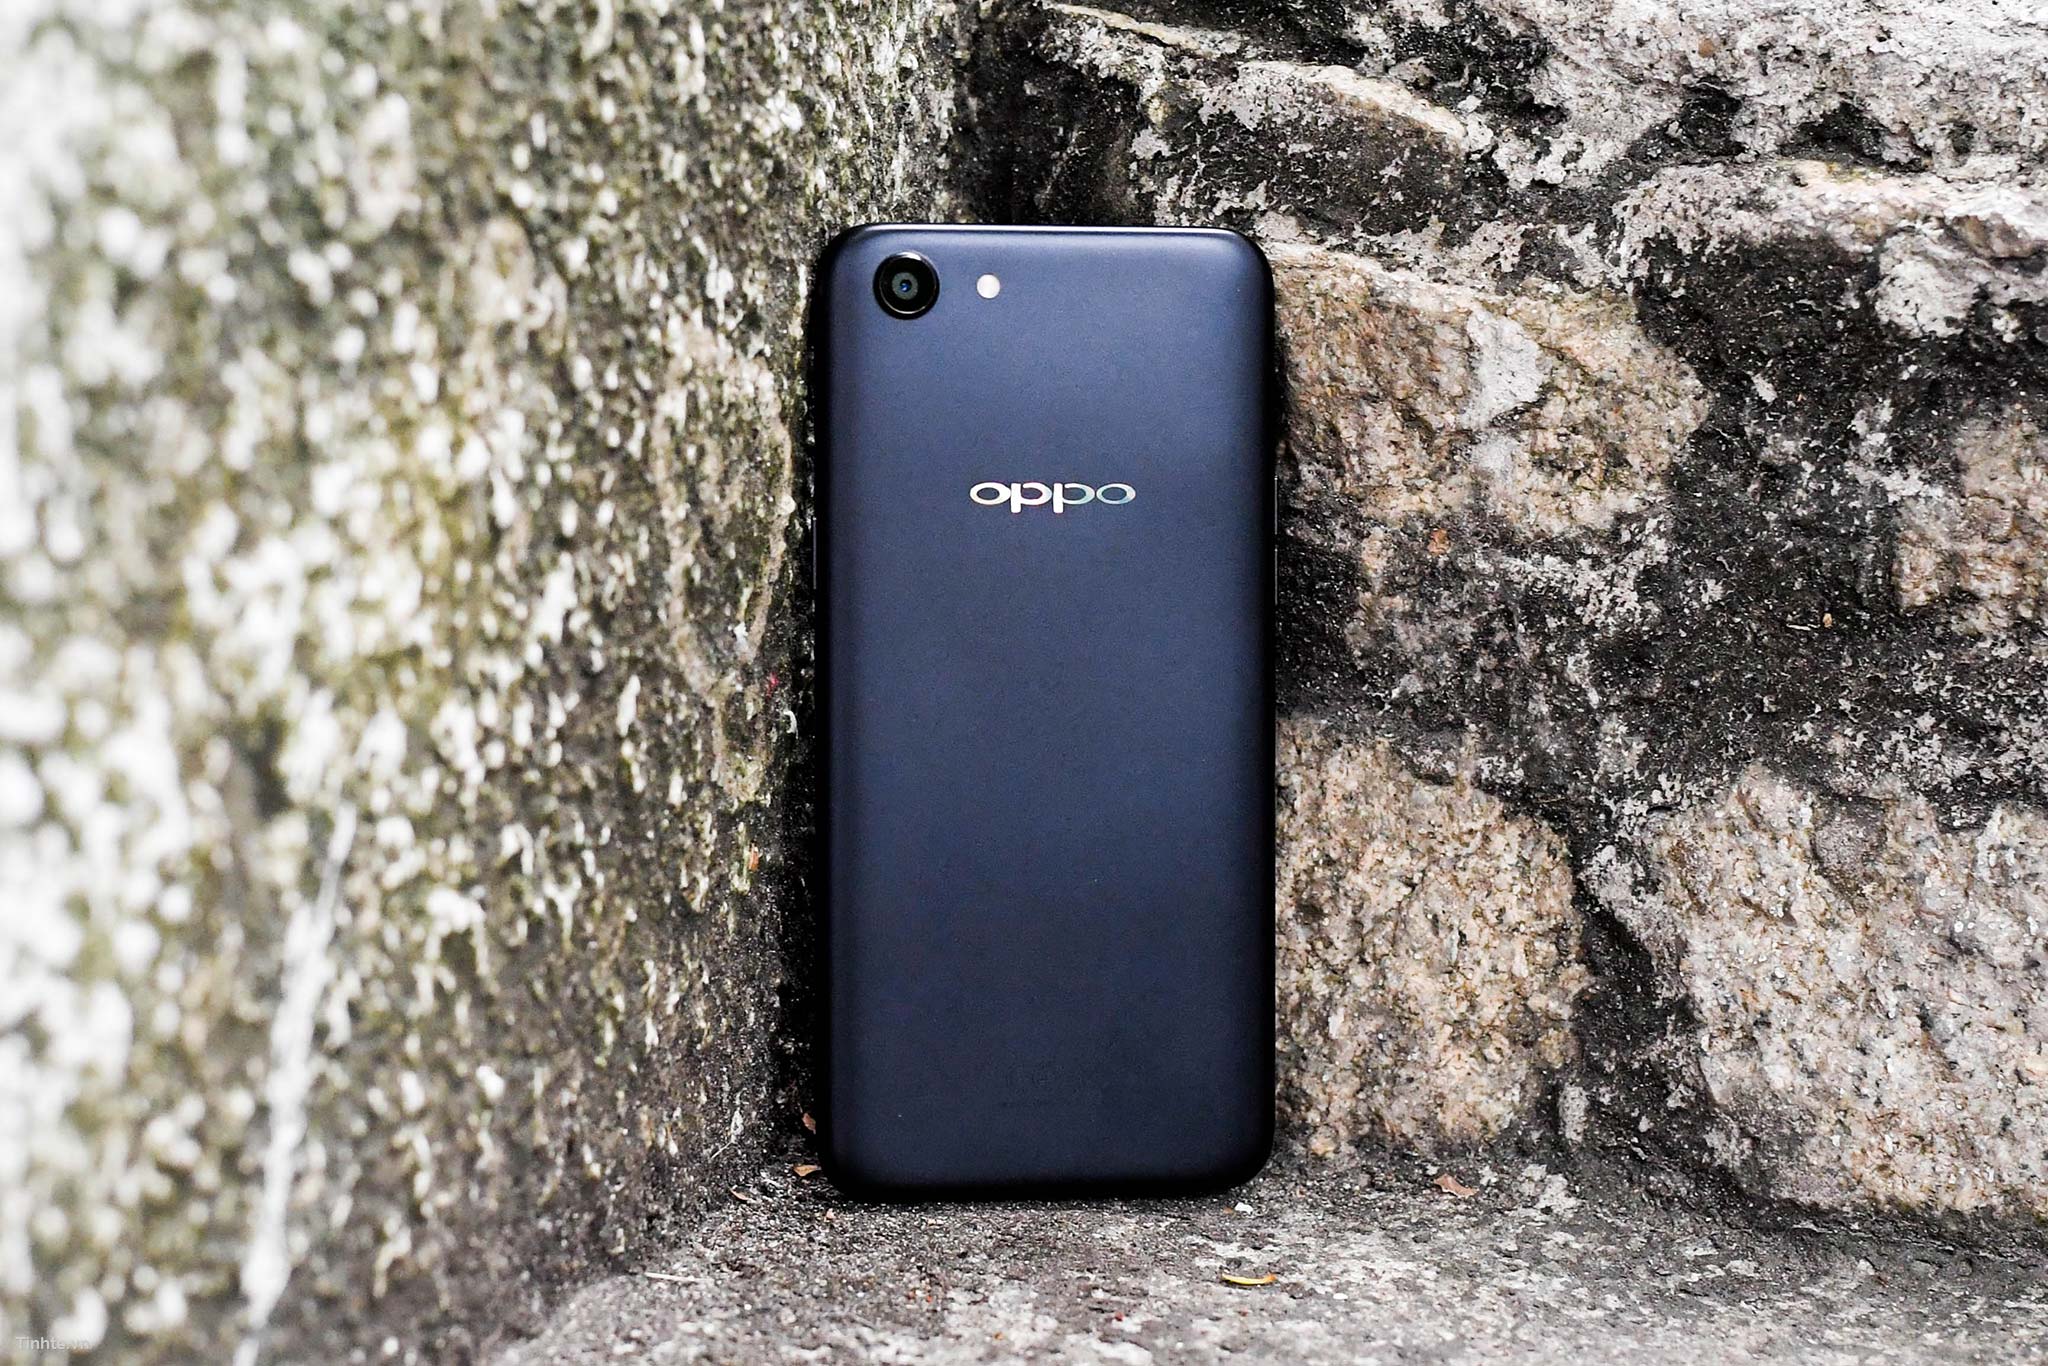 Đánh giá OPPO A83: màn hình 18:9, camera selfie có AI, chip Helio P23, giá  5 triệu